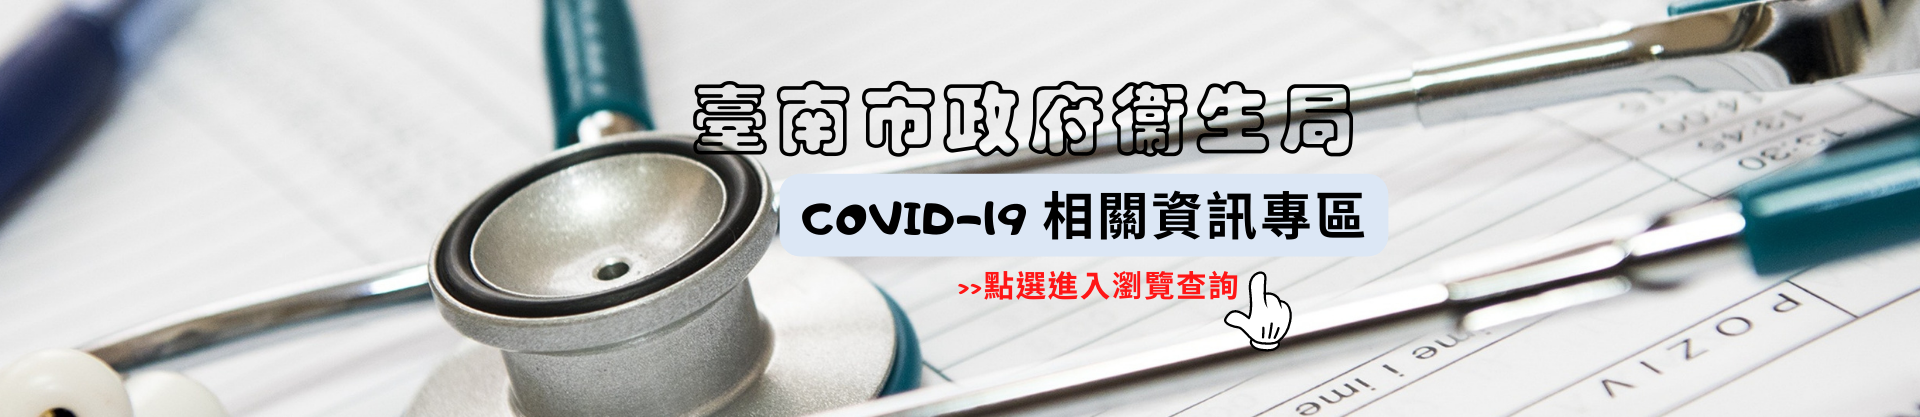 臺南市政府衛生局COVID-19相關資訊專區